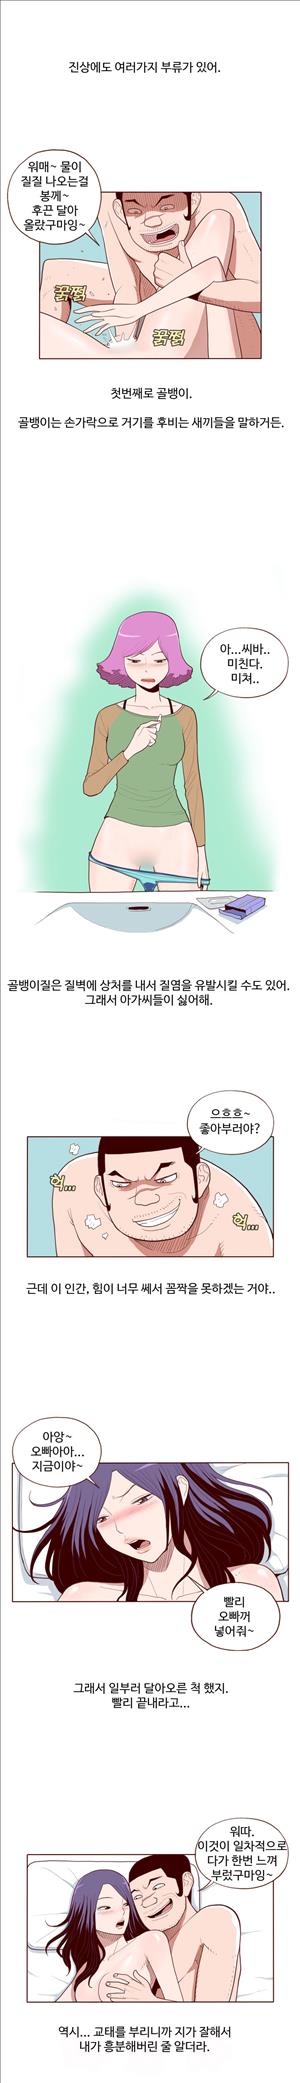 미색 - 썰만화 시즌4 51화 - 오피녀의 비밀(중)_0